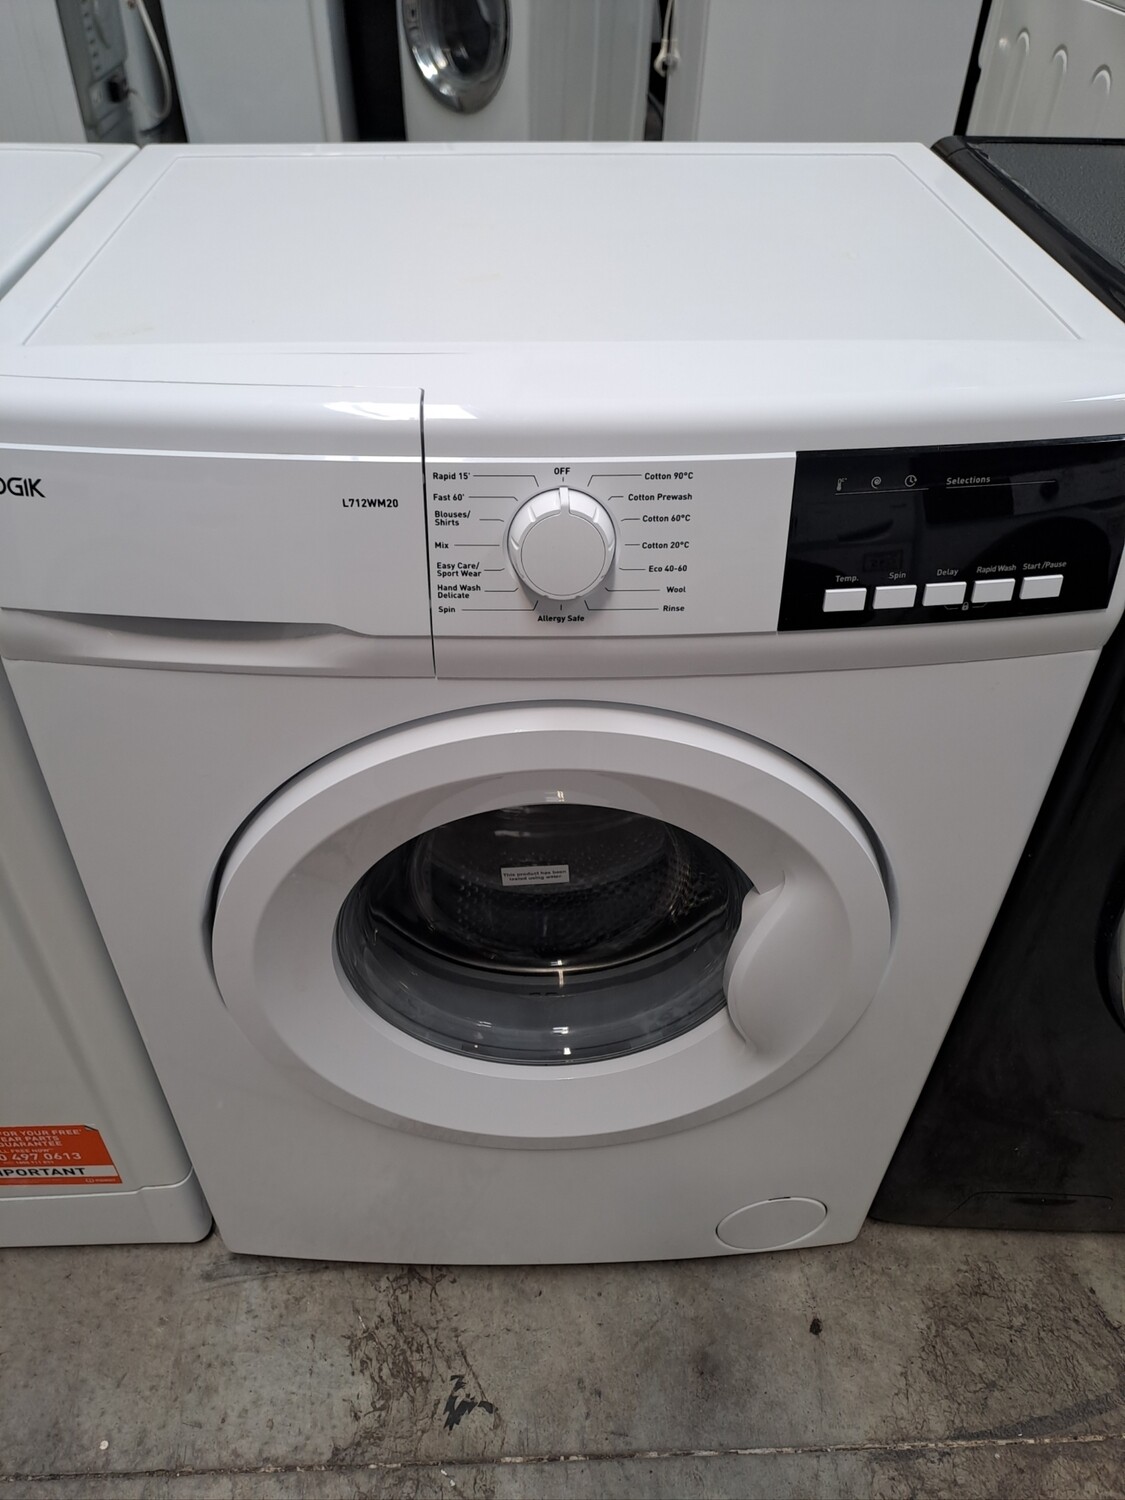 Logik L712WM20 7kg Load, 1200 Spin Washing Machine - White - Refurbished - 6 Month Guarantee